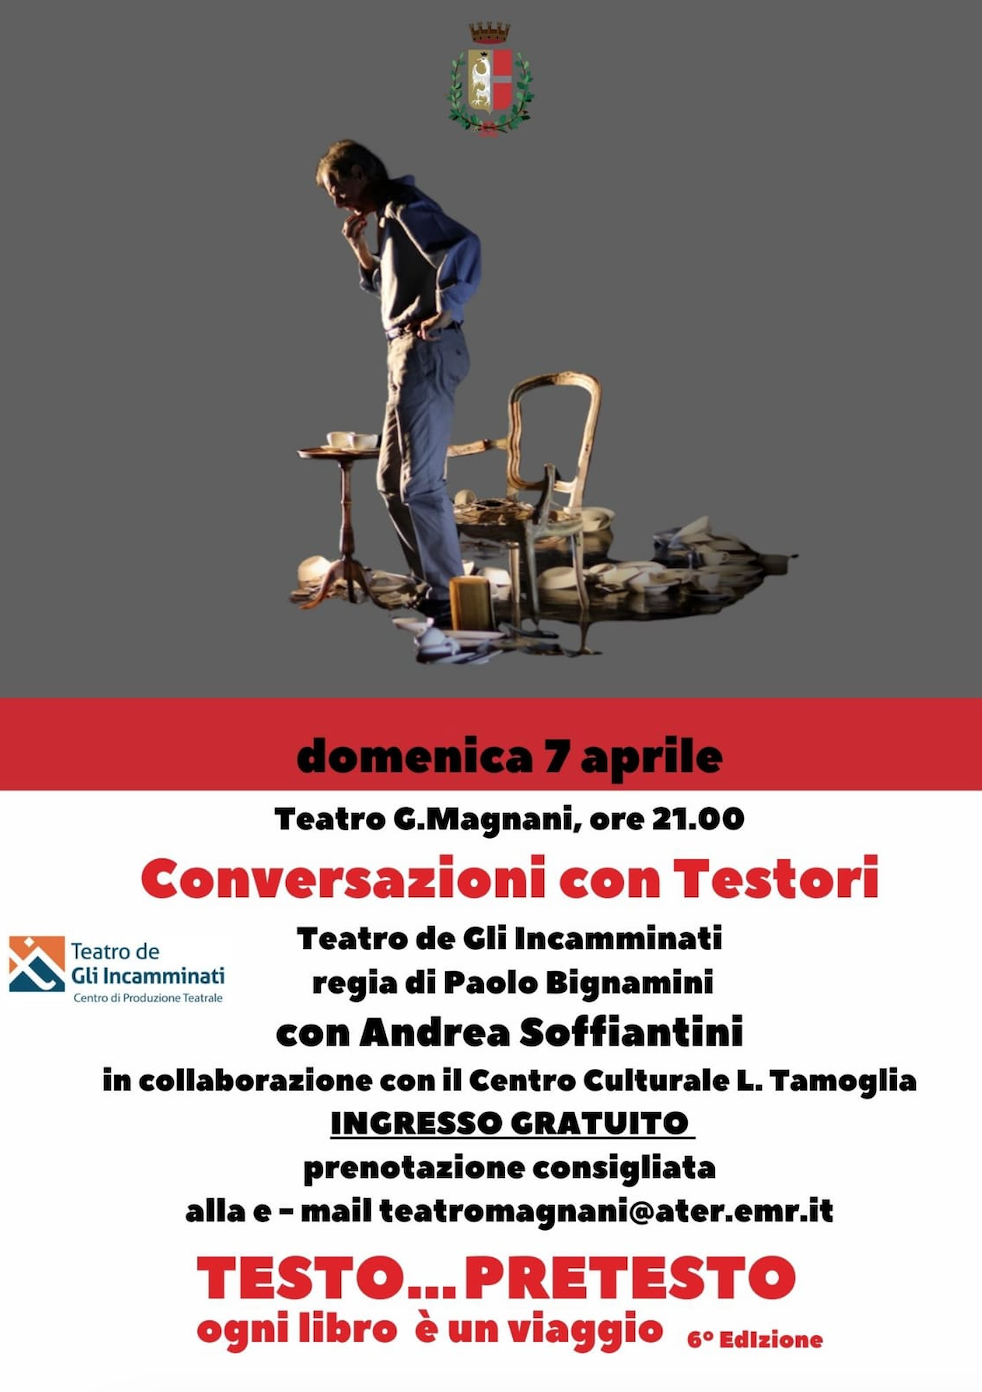 Featured image for “Fidenza: Conversazioni con Testori con Soffiantini”